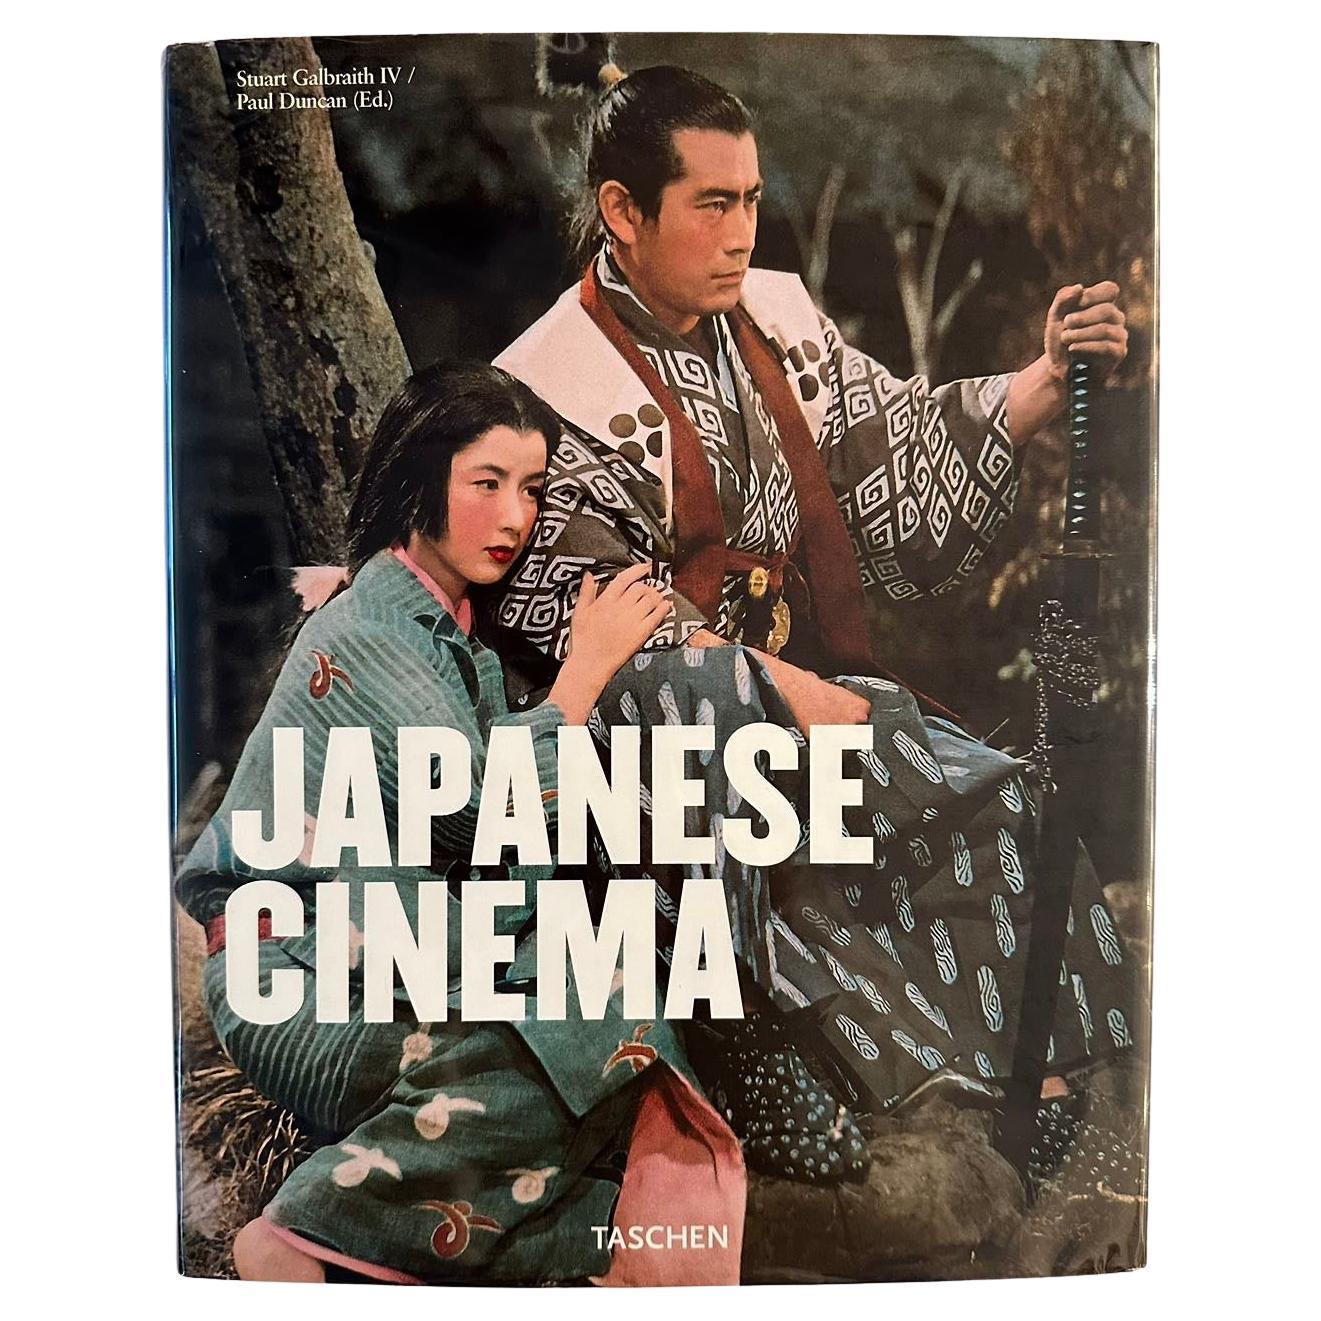 Japanese Cinema by Stuart Galbraith IV/Paul Duncan